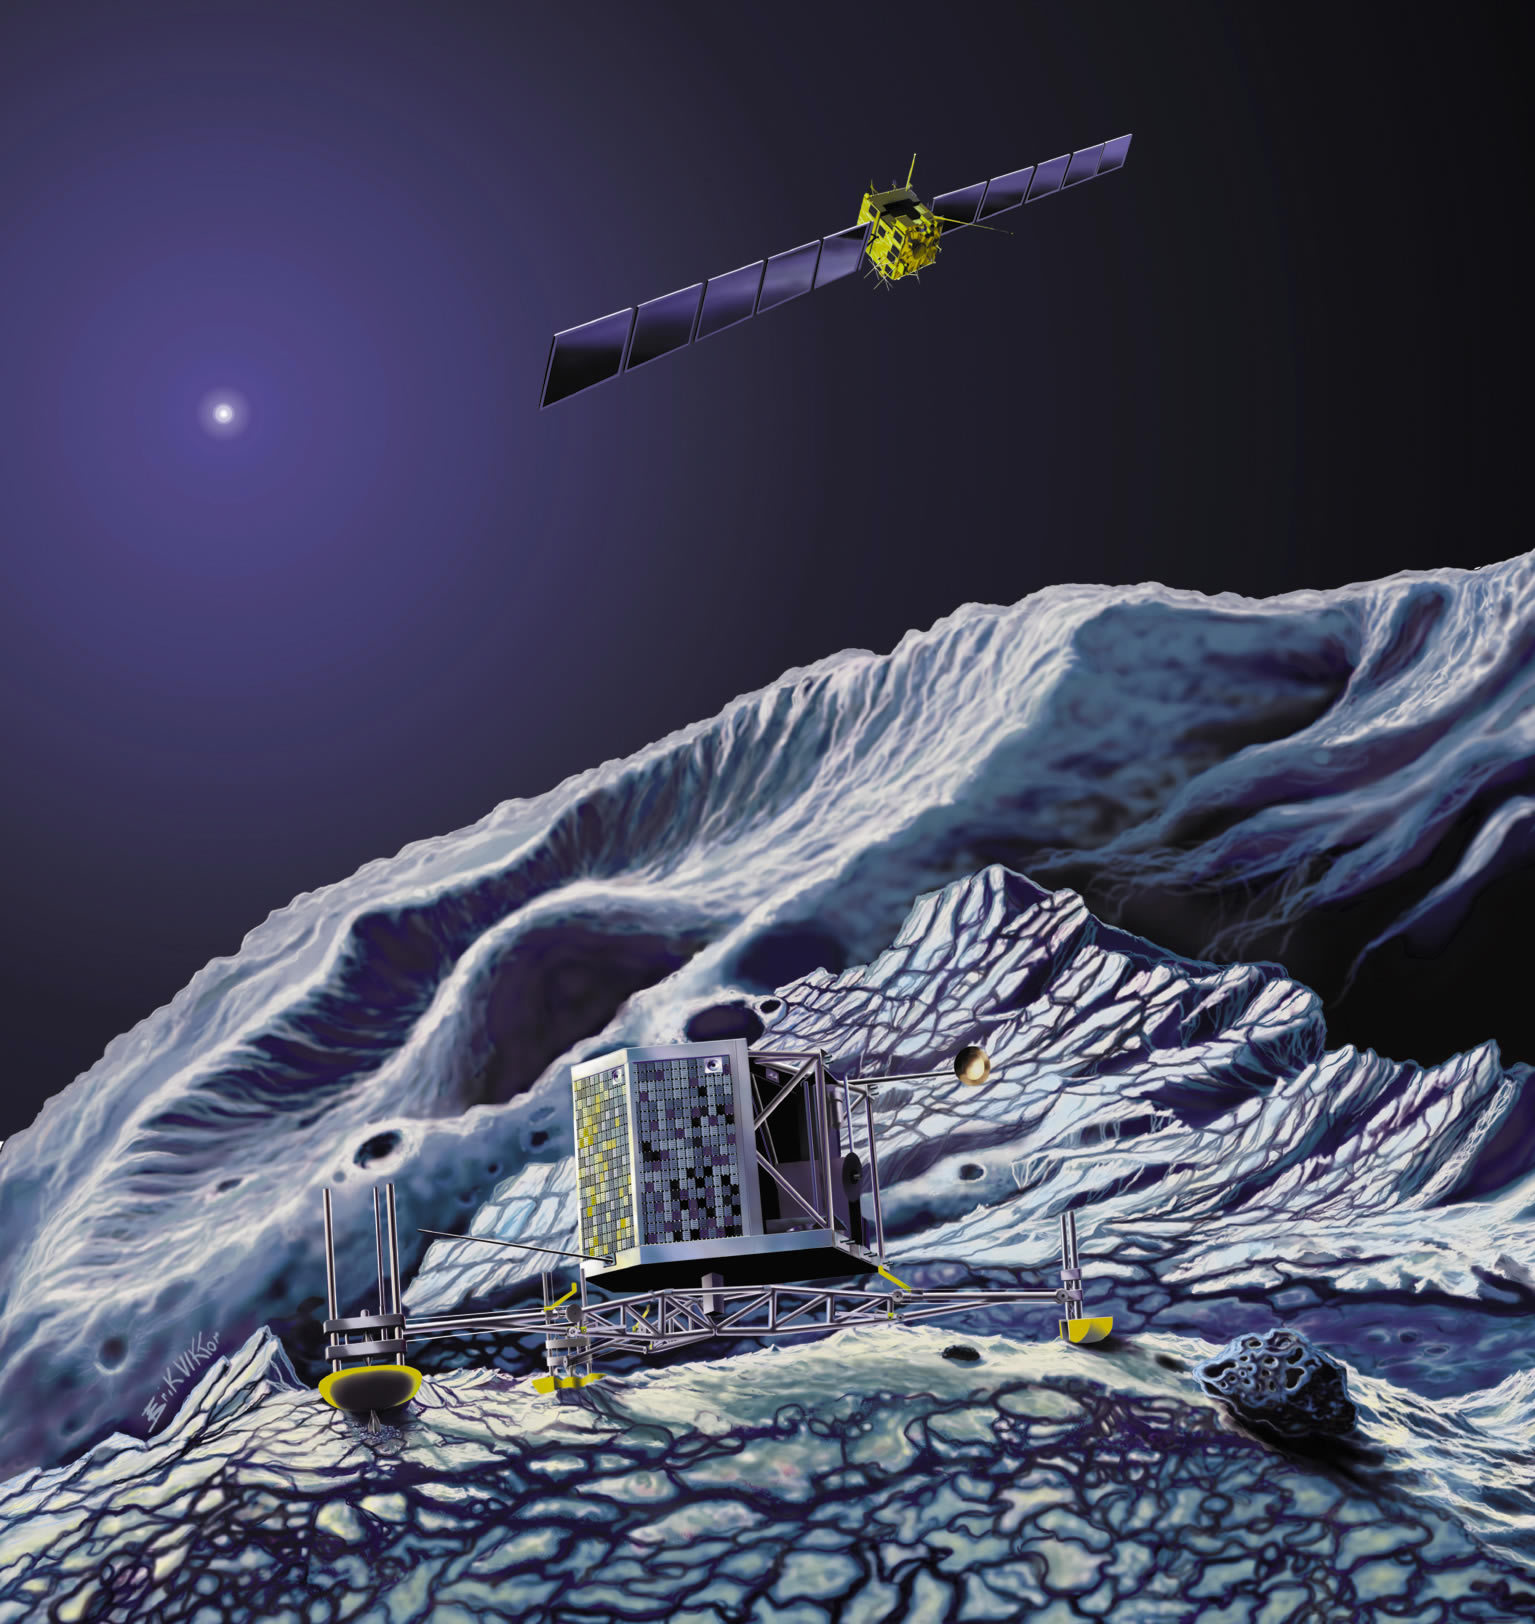 Межпланетная станция Rosetta выполнила третий ключевой маневр и сфотографировала комету Чурюмова Герасименко